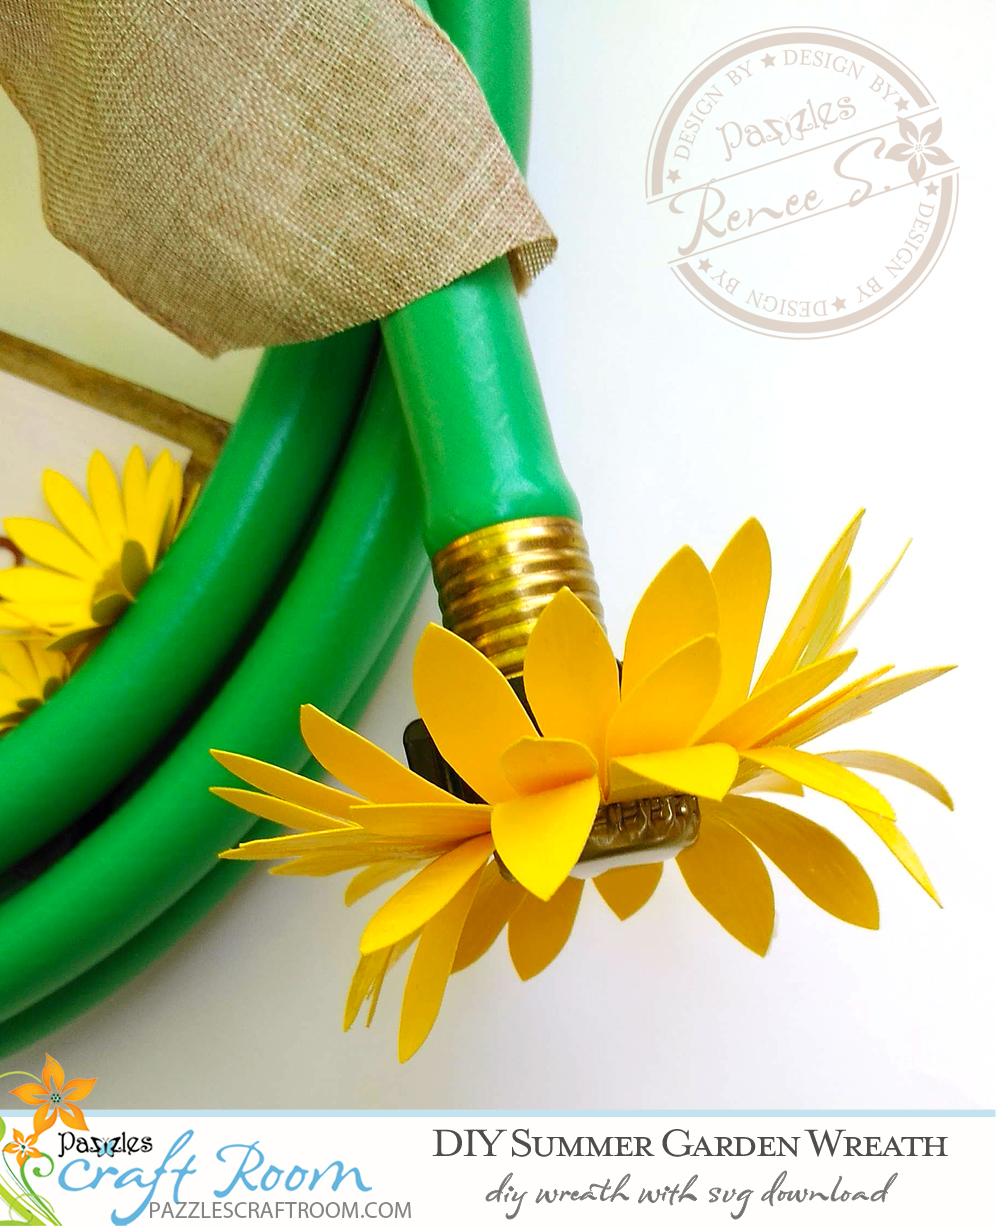 DIY trang trí vòng hoa bằng ống nước tưới vườn là một ý tưởng sáng tạo và thú vị cho người yêu thích trang trí nhà cửa. Với những bước hướng dẫn đơn giản và hình ảnh minh họa chi tiết, bạn dễ dàng tự tay tạo ra những chiếc vòng hoa đẹp mắt và độc đáo. Xem ngay hình ảnh liên quan để khám phá thêm về ý tưởng này.